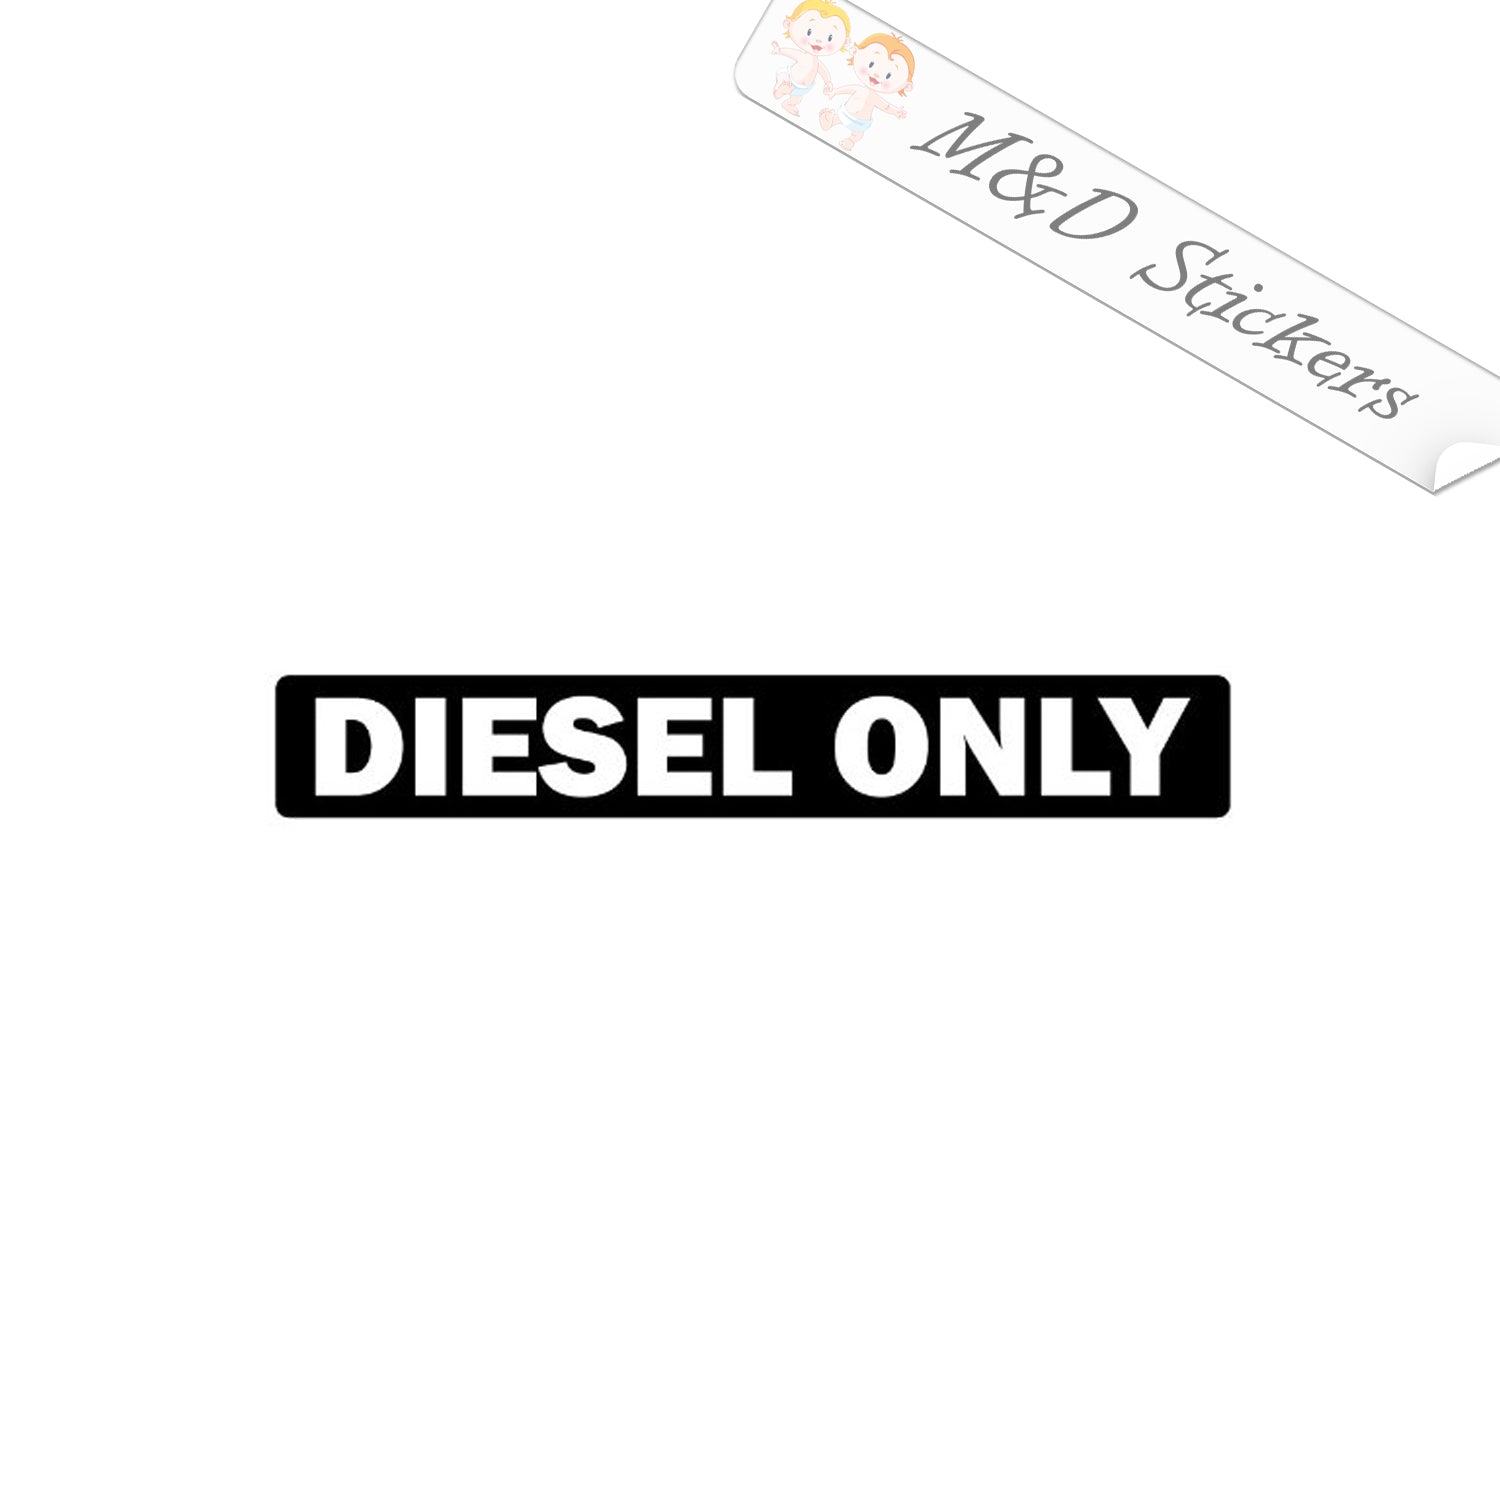 Diesel Only Sticker